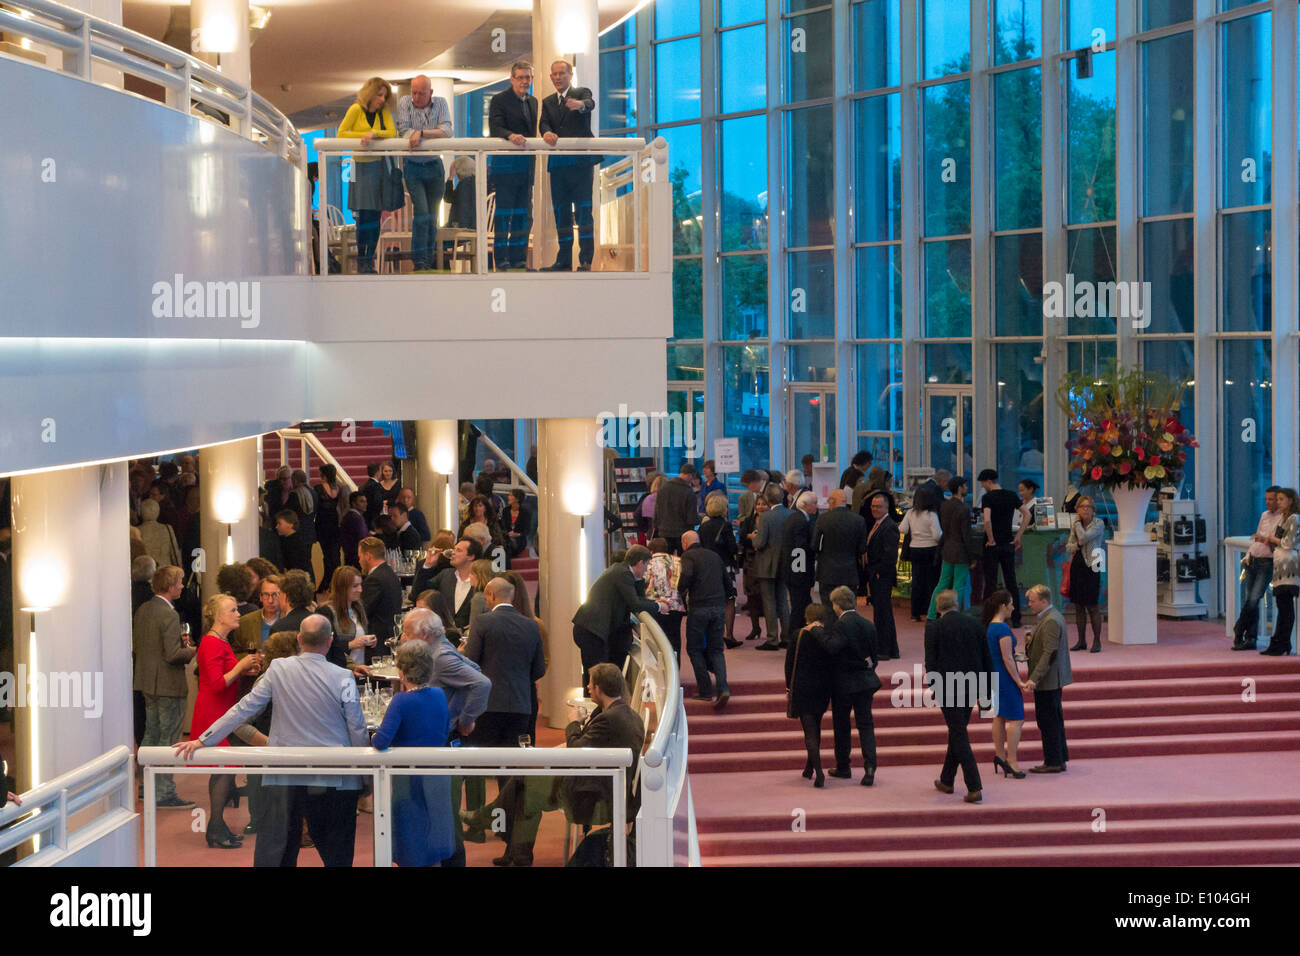 Amsterdam Stopera interno nazionale olandese edificio Opera hall foyer con le persone dei visitatori sulla serata di apertura durante l'intervallo Foto Stock